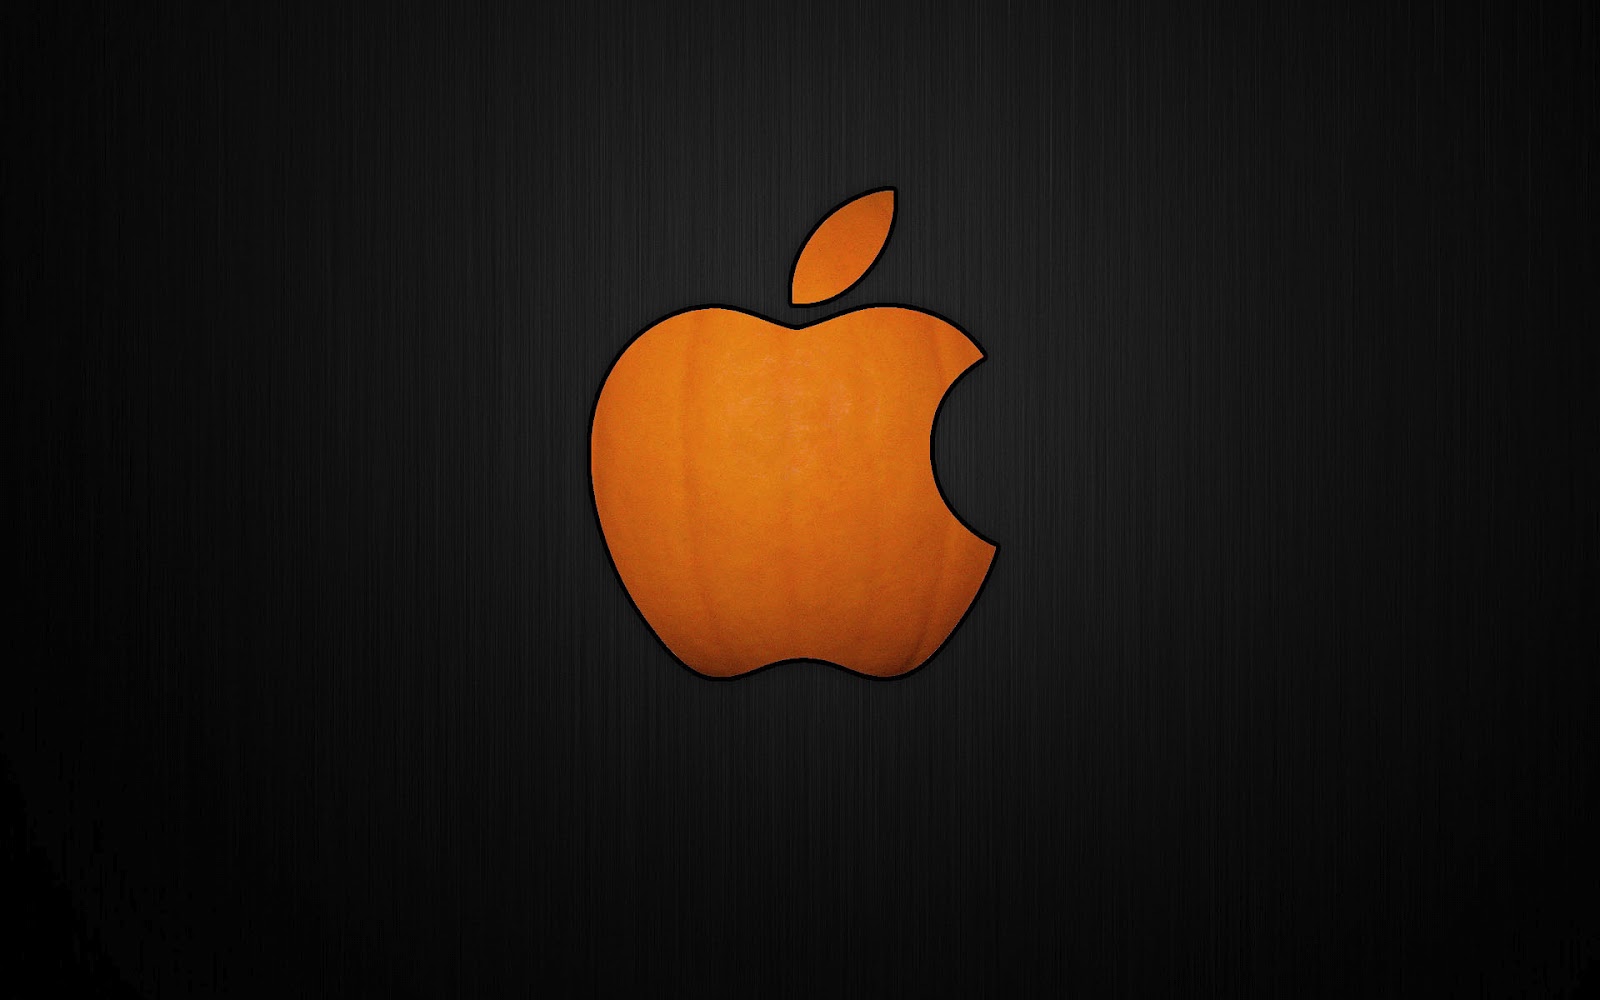 http://1.bp.blogspot.com/-amxwyCzFOJY/UGHarsf1SjI/AAAAAAAAD7Y/46PB7SrvWYU/s1600/hd-zwarte-achtergrond-met-apple-halloween-logo-hd-apple-wallpaper.jpg